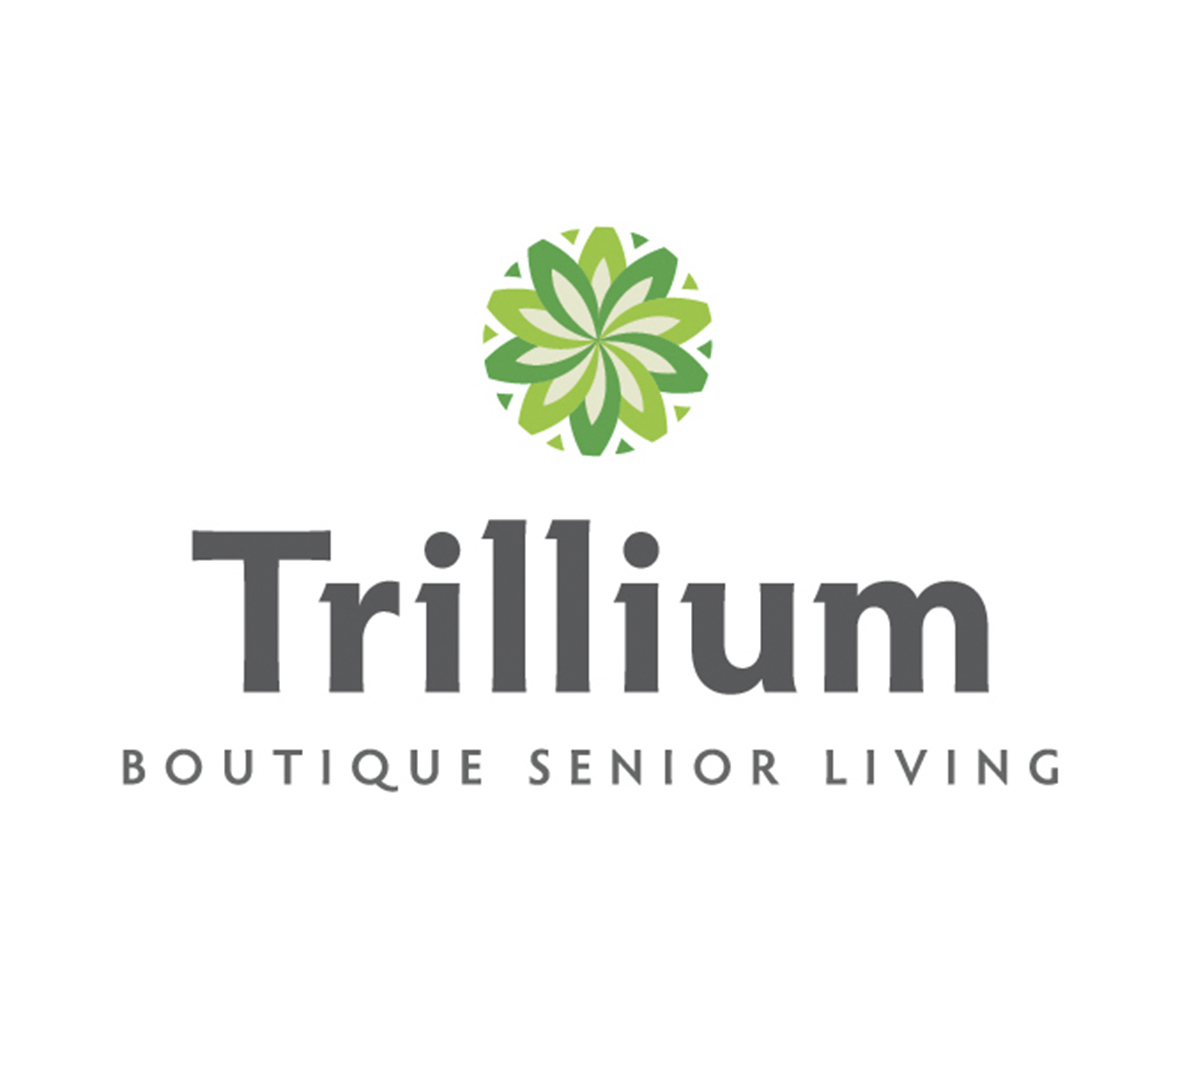 Trillium boutique senior living